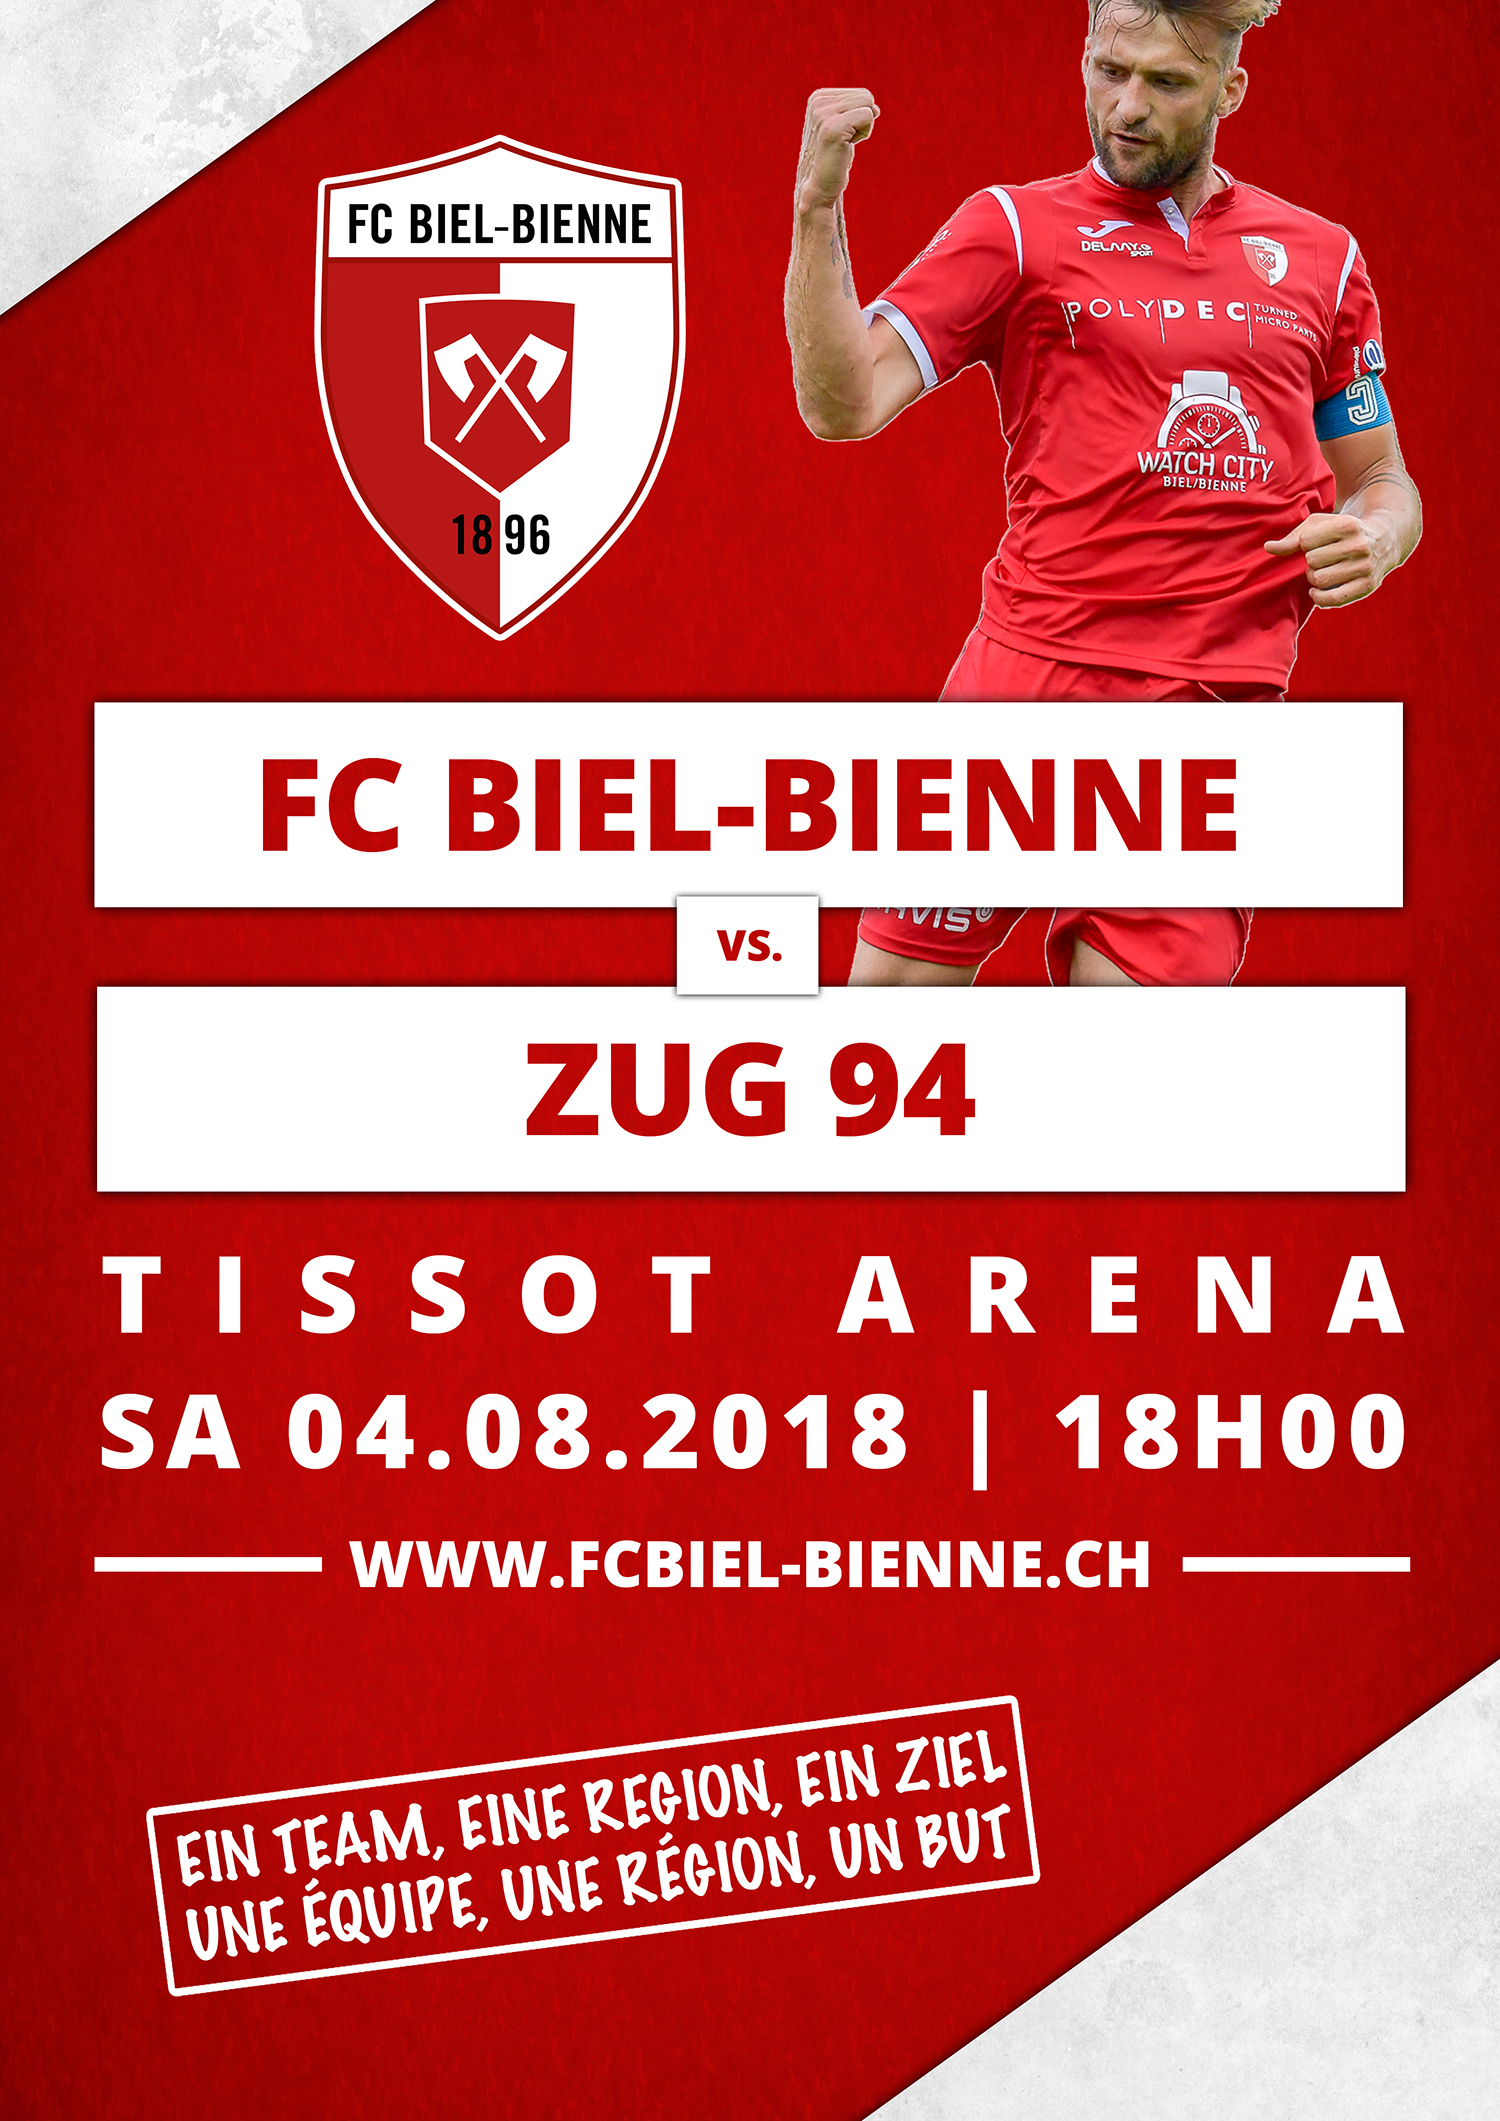 FC Biel-Bienne vs. Zug 94